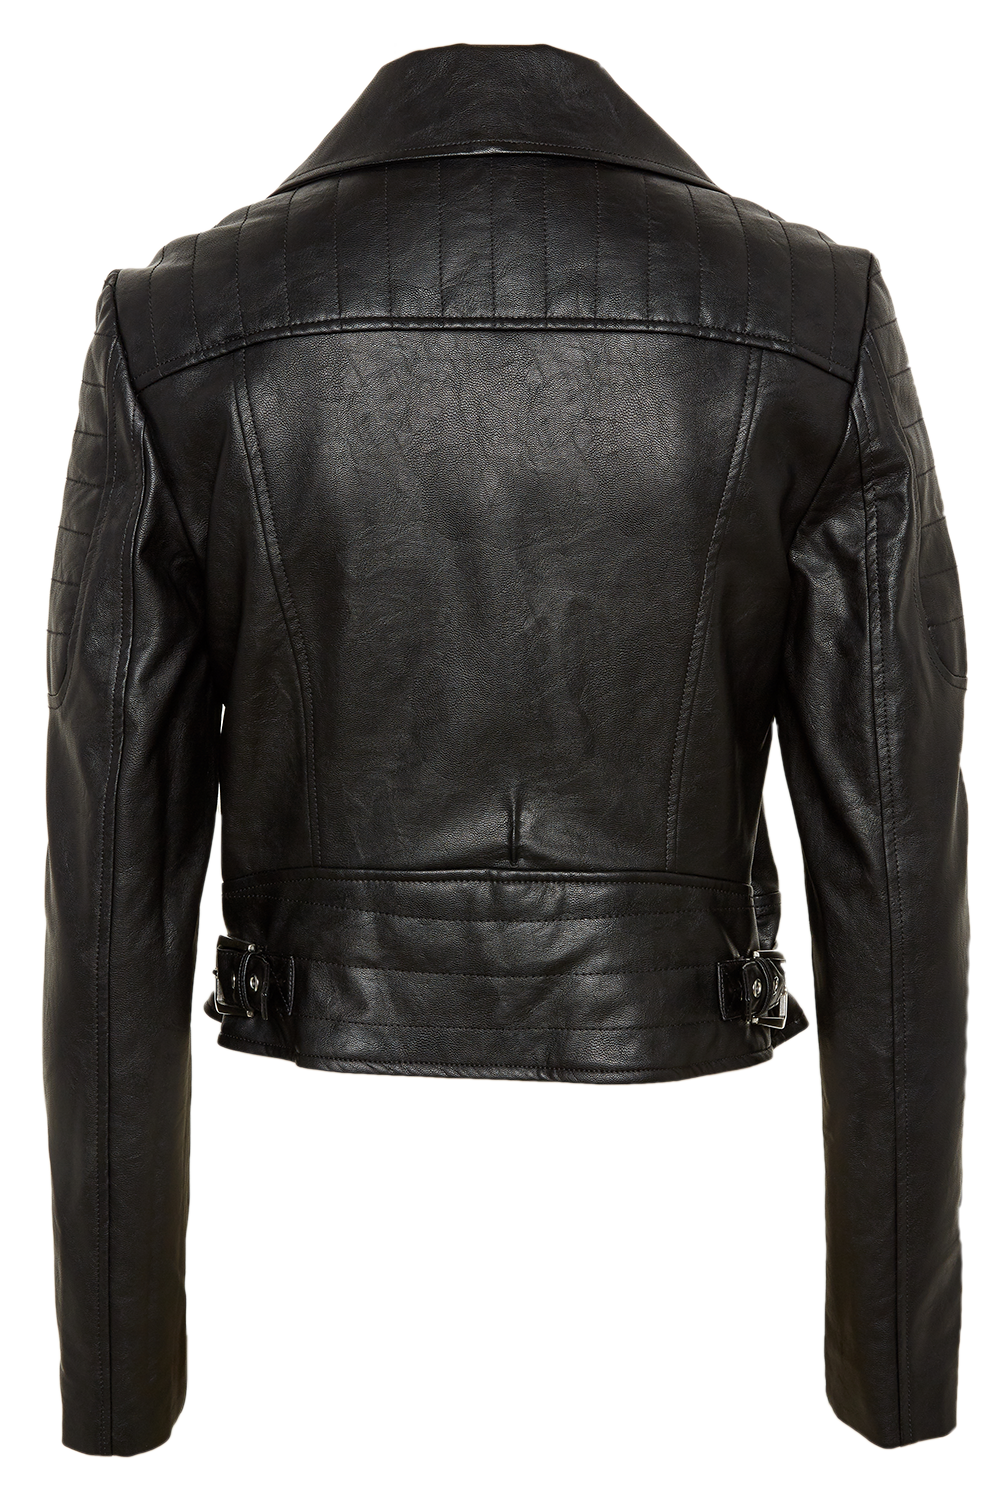 Jacket Leather Back Transparent File